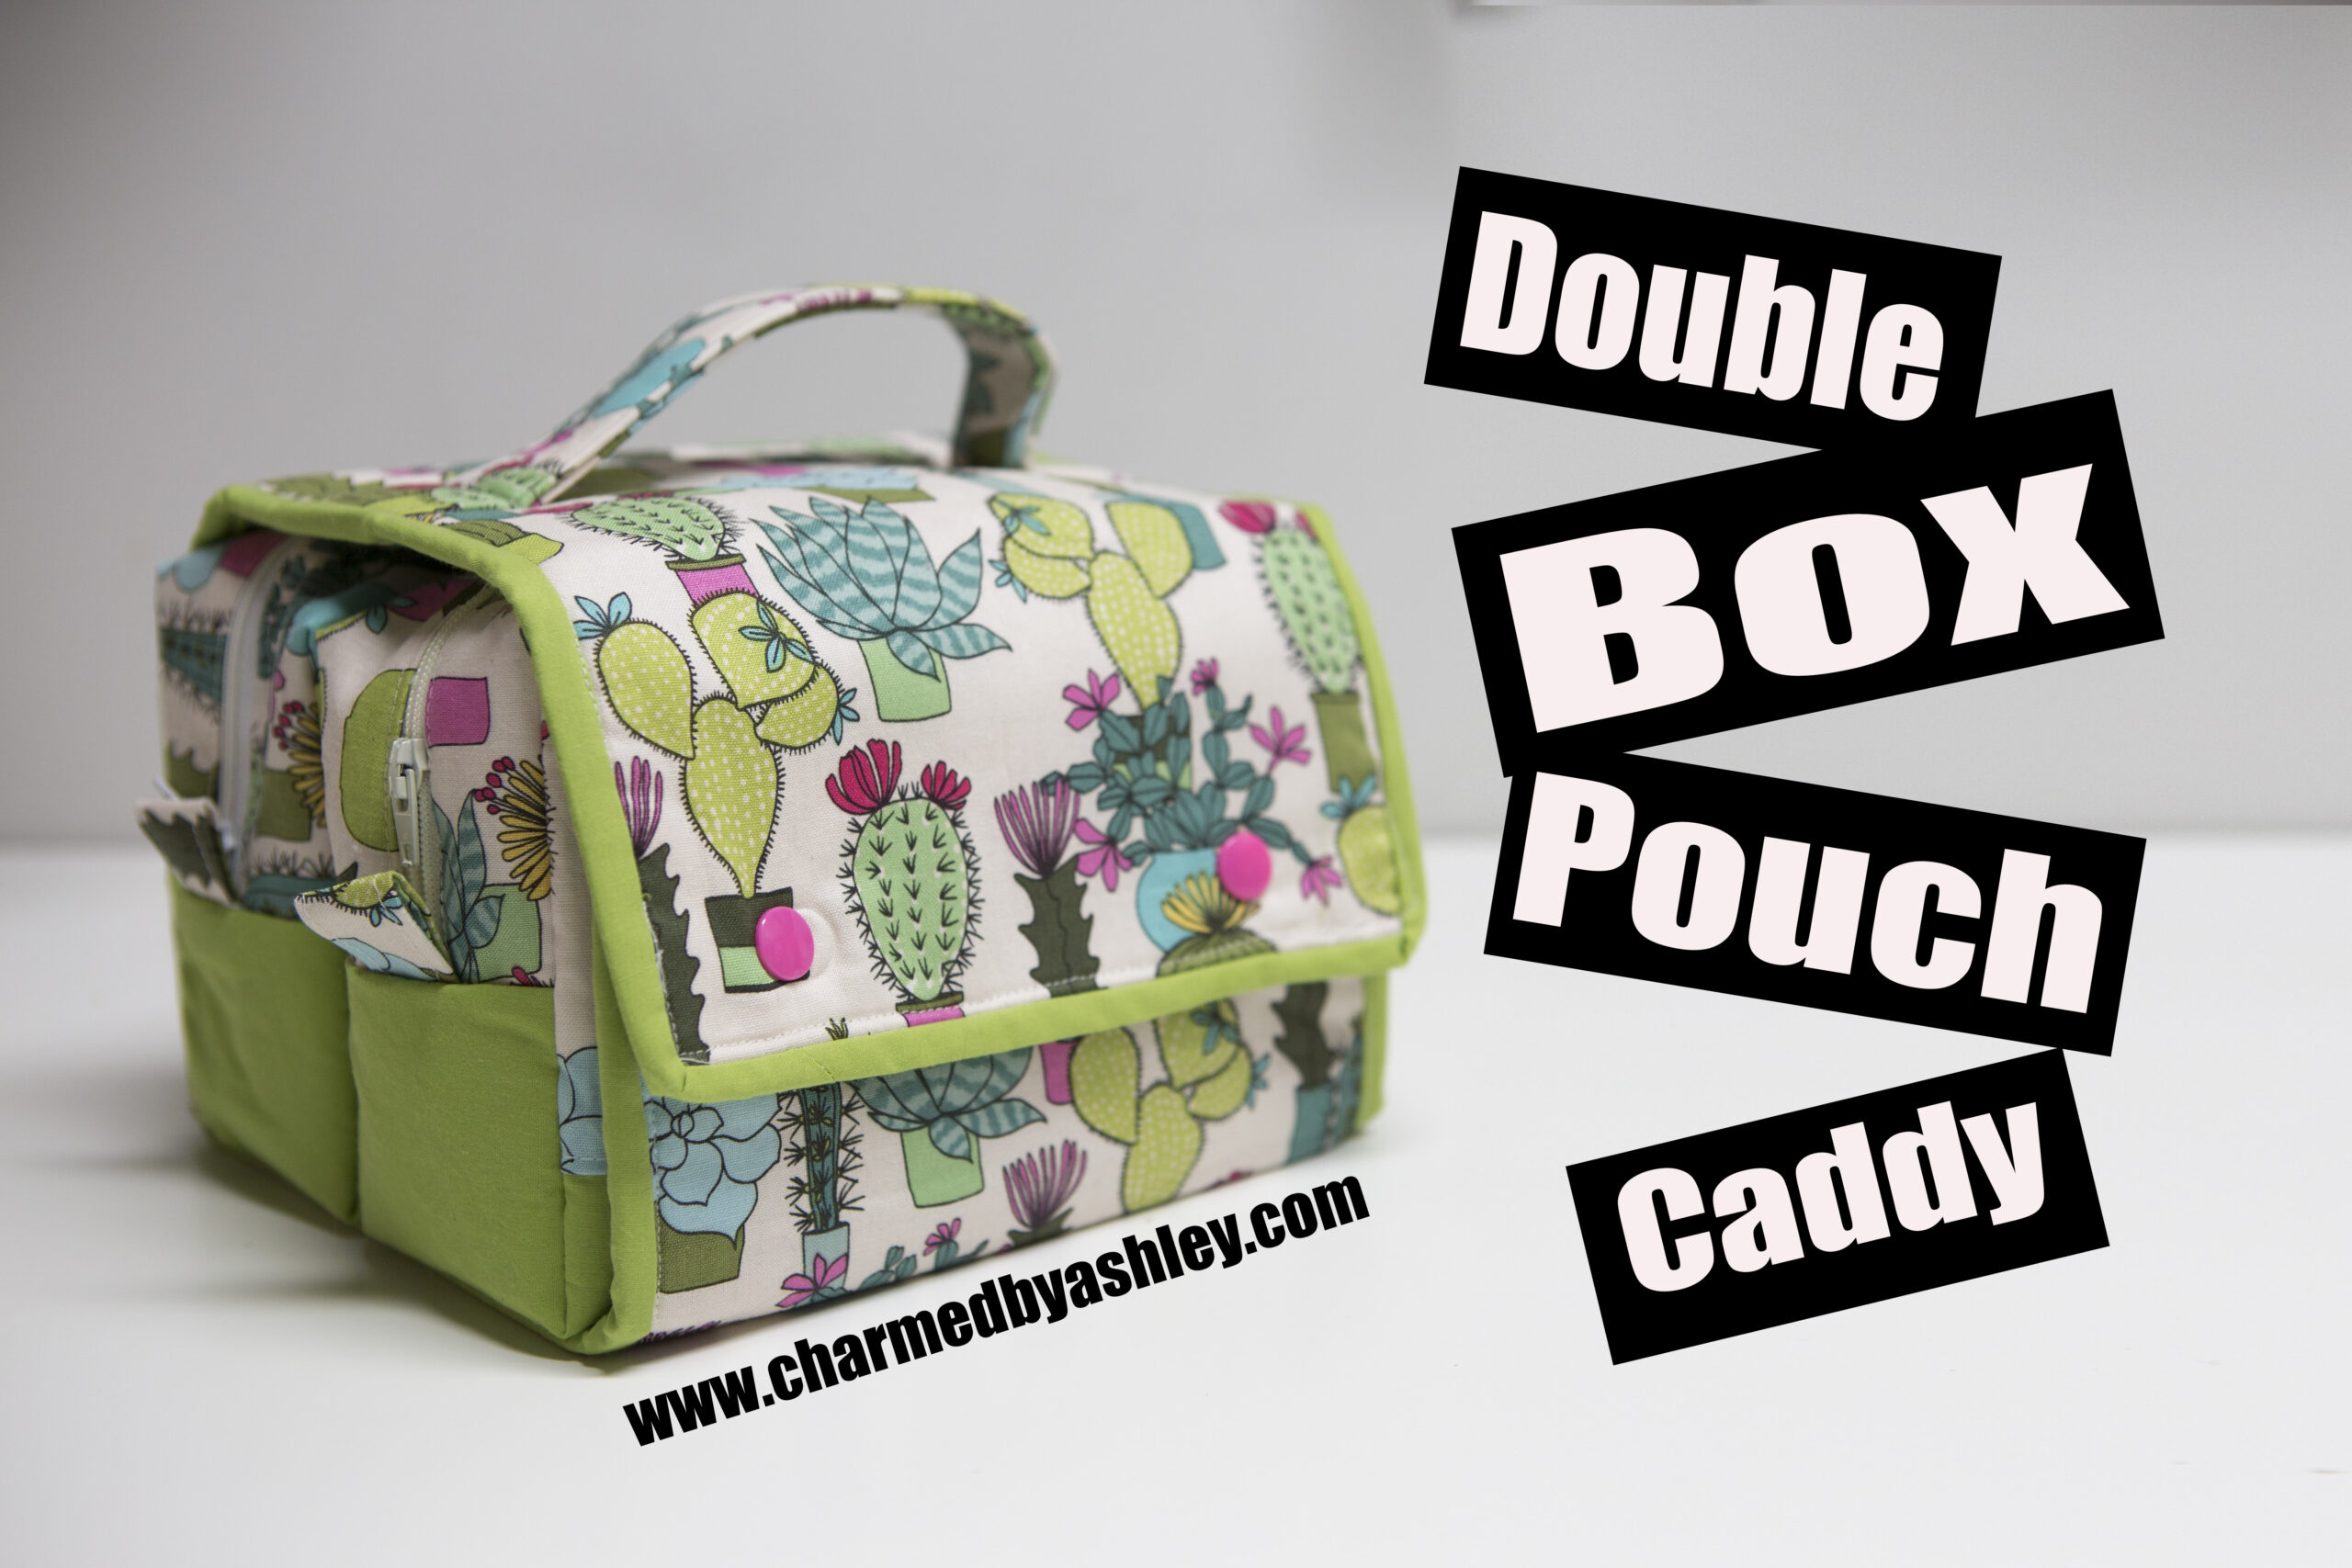 Box pouch caddy